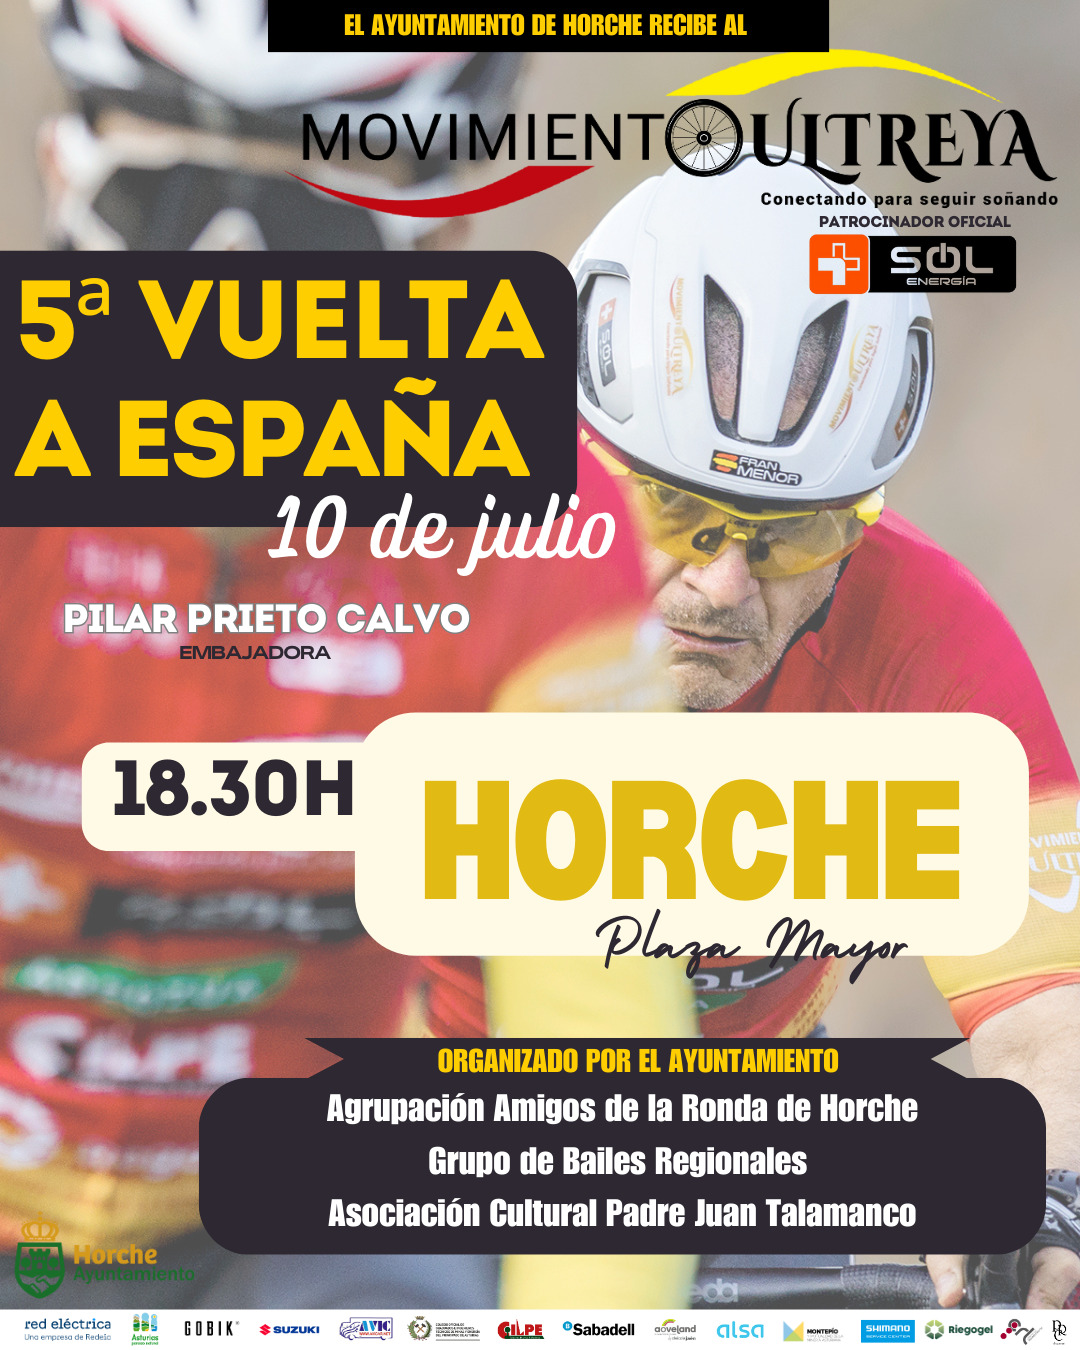 La 5ª Vuelta a España Ultreya Más Sol llega a Horche el 10 de julio